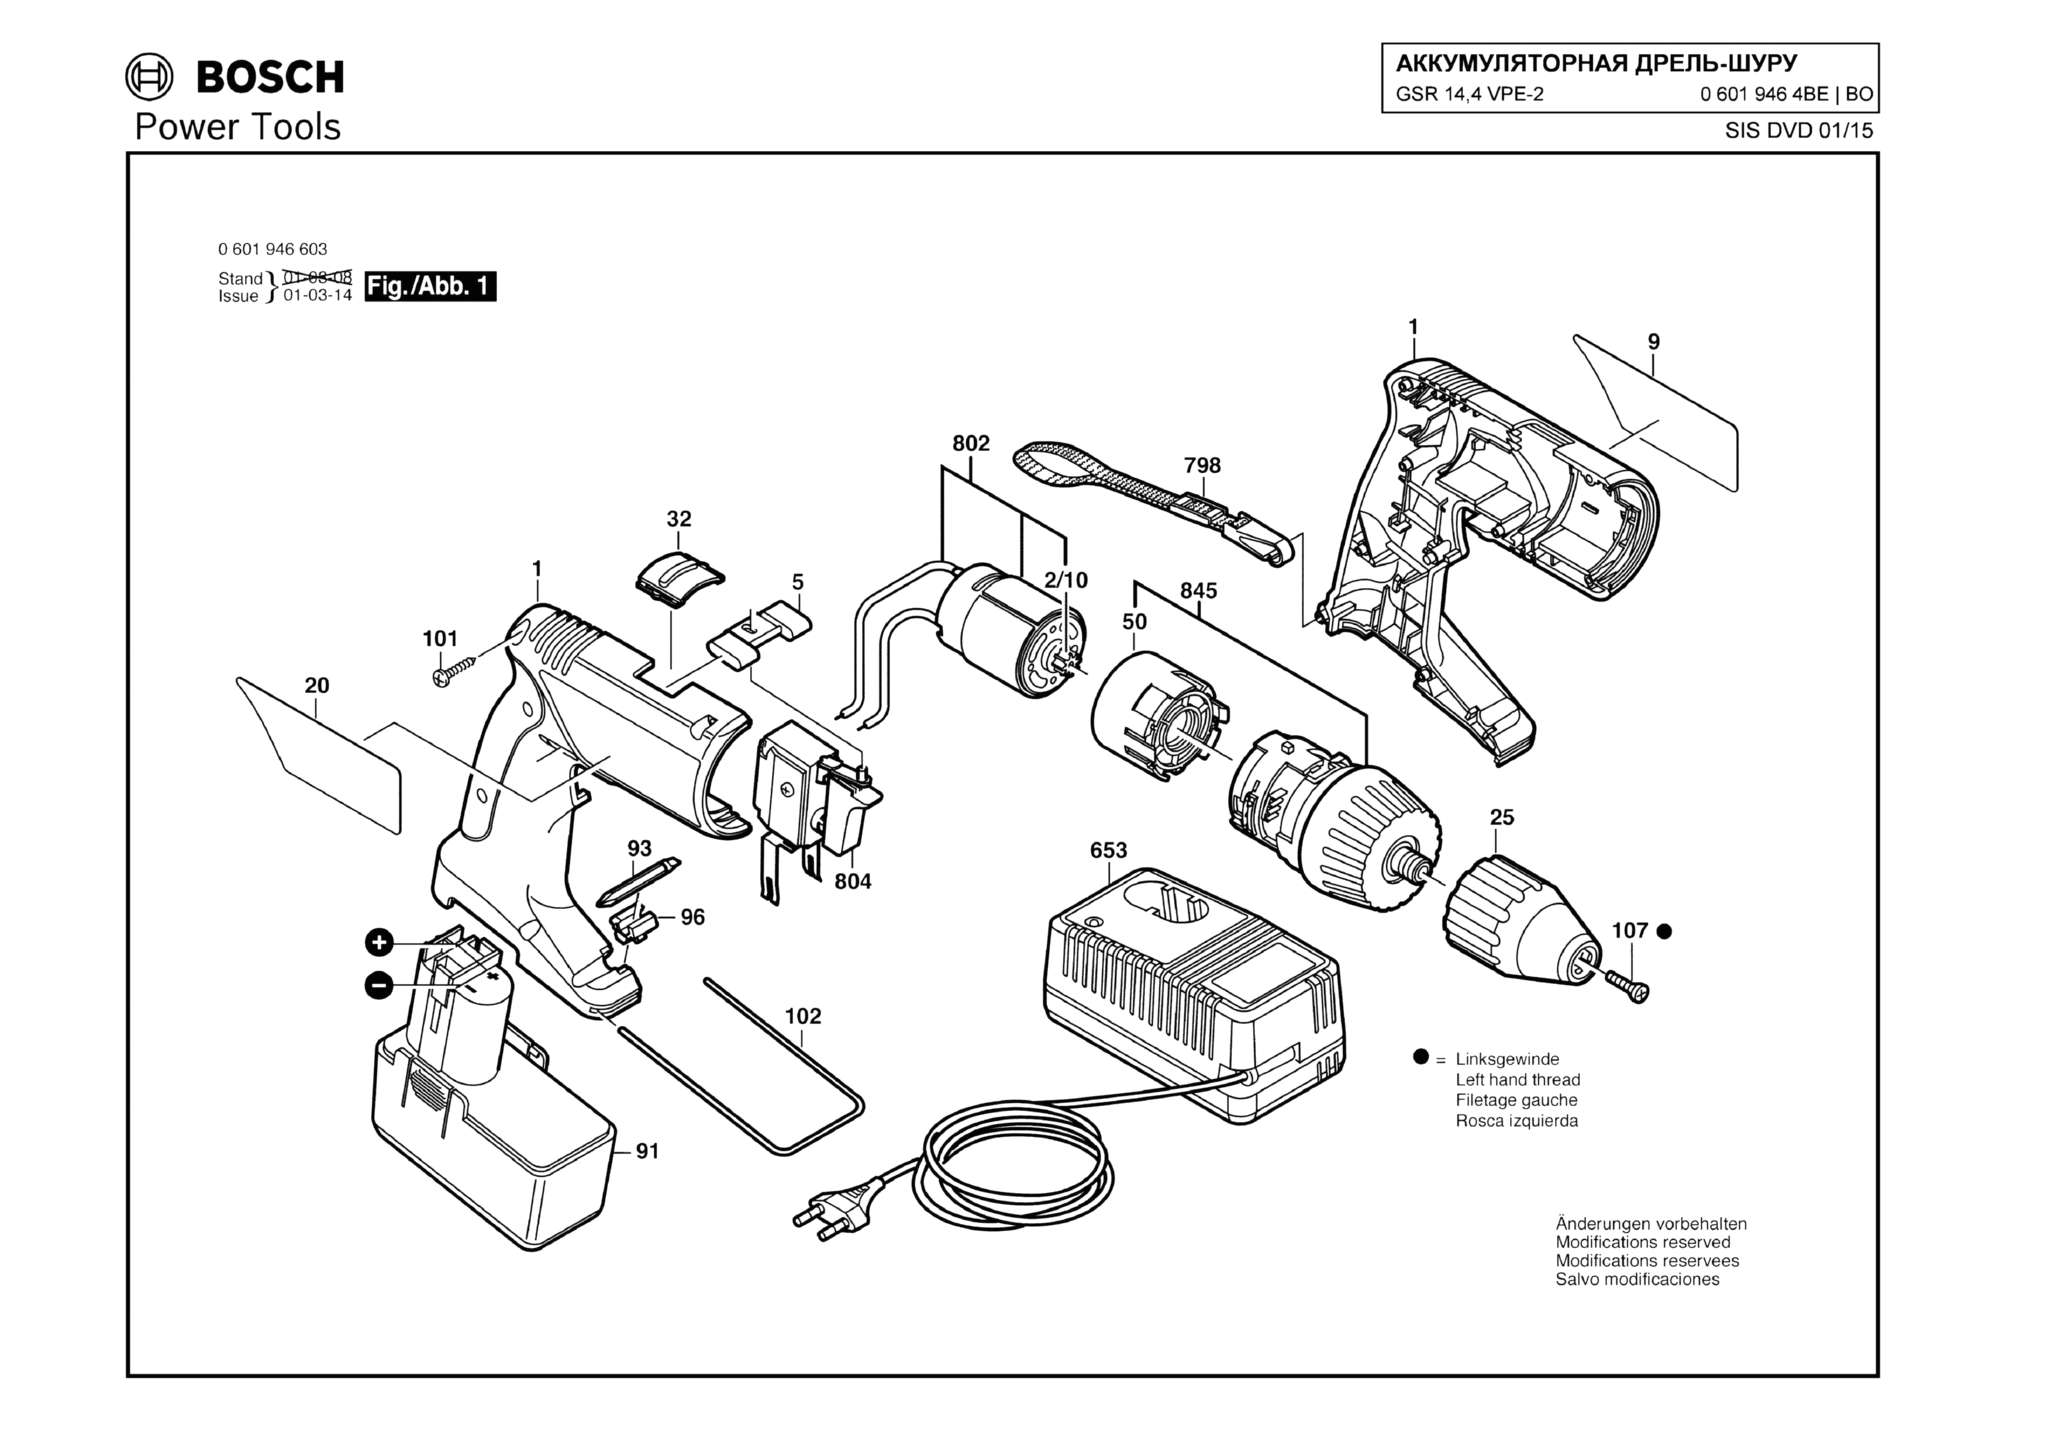 Запчасти, схема и деталировка Bosch GSR 14,4 VPE-2 (ТИП 06019464BE)